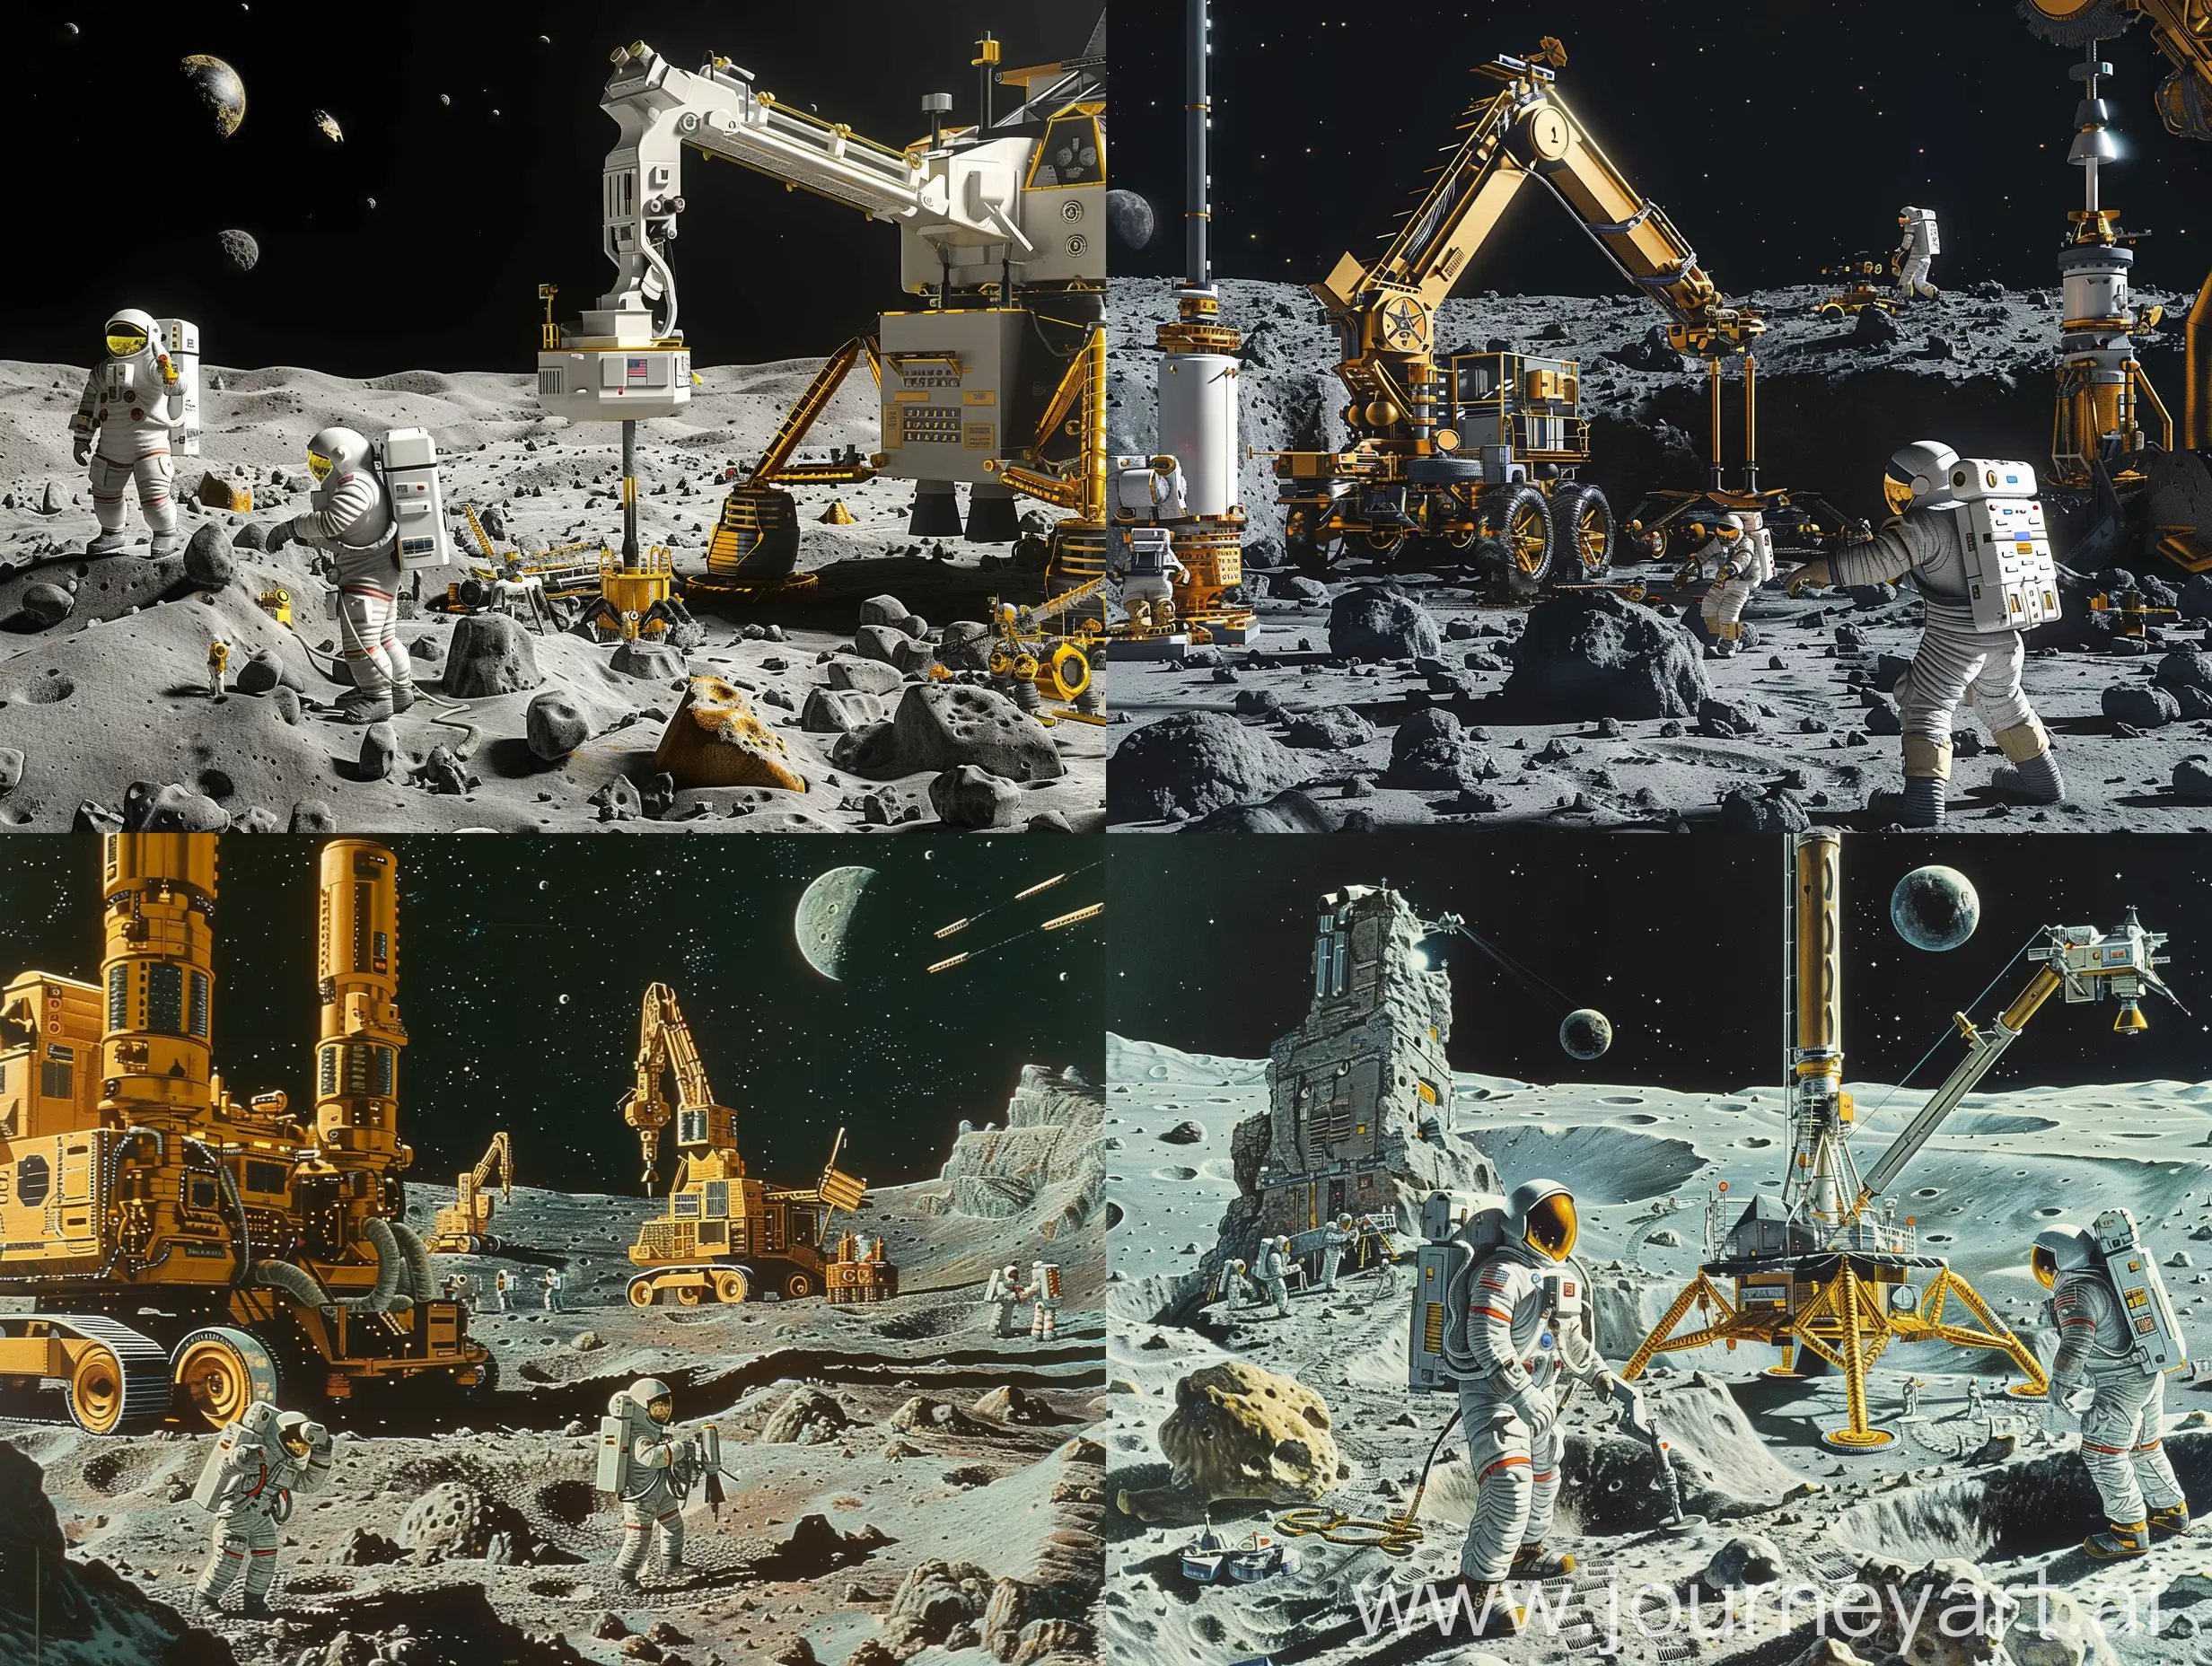 帮助我生成一个对月球钻探的照片，有智能化机器，有宇航员操纵，有月球基地等，具有高科技